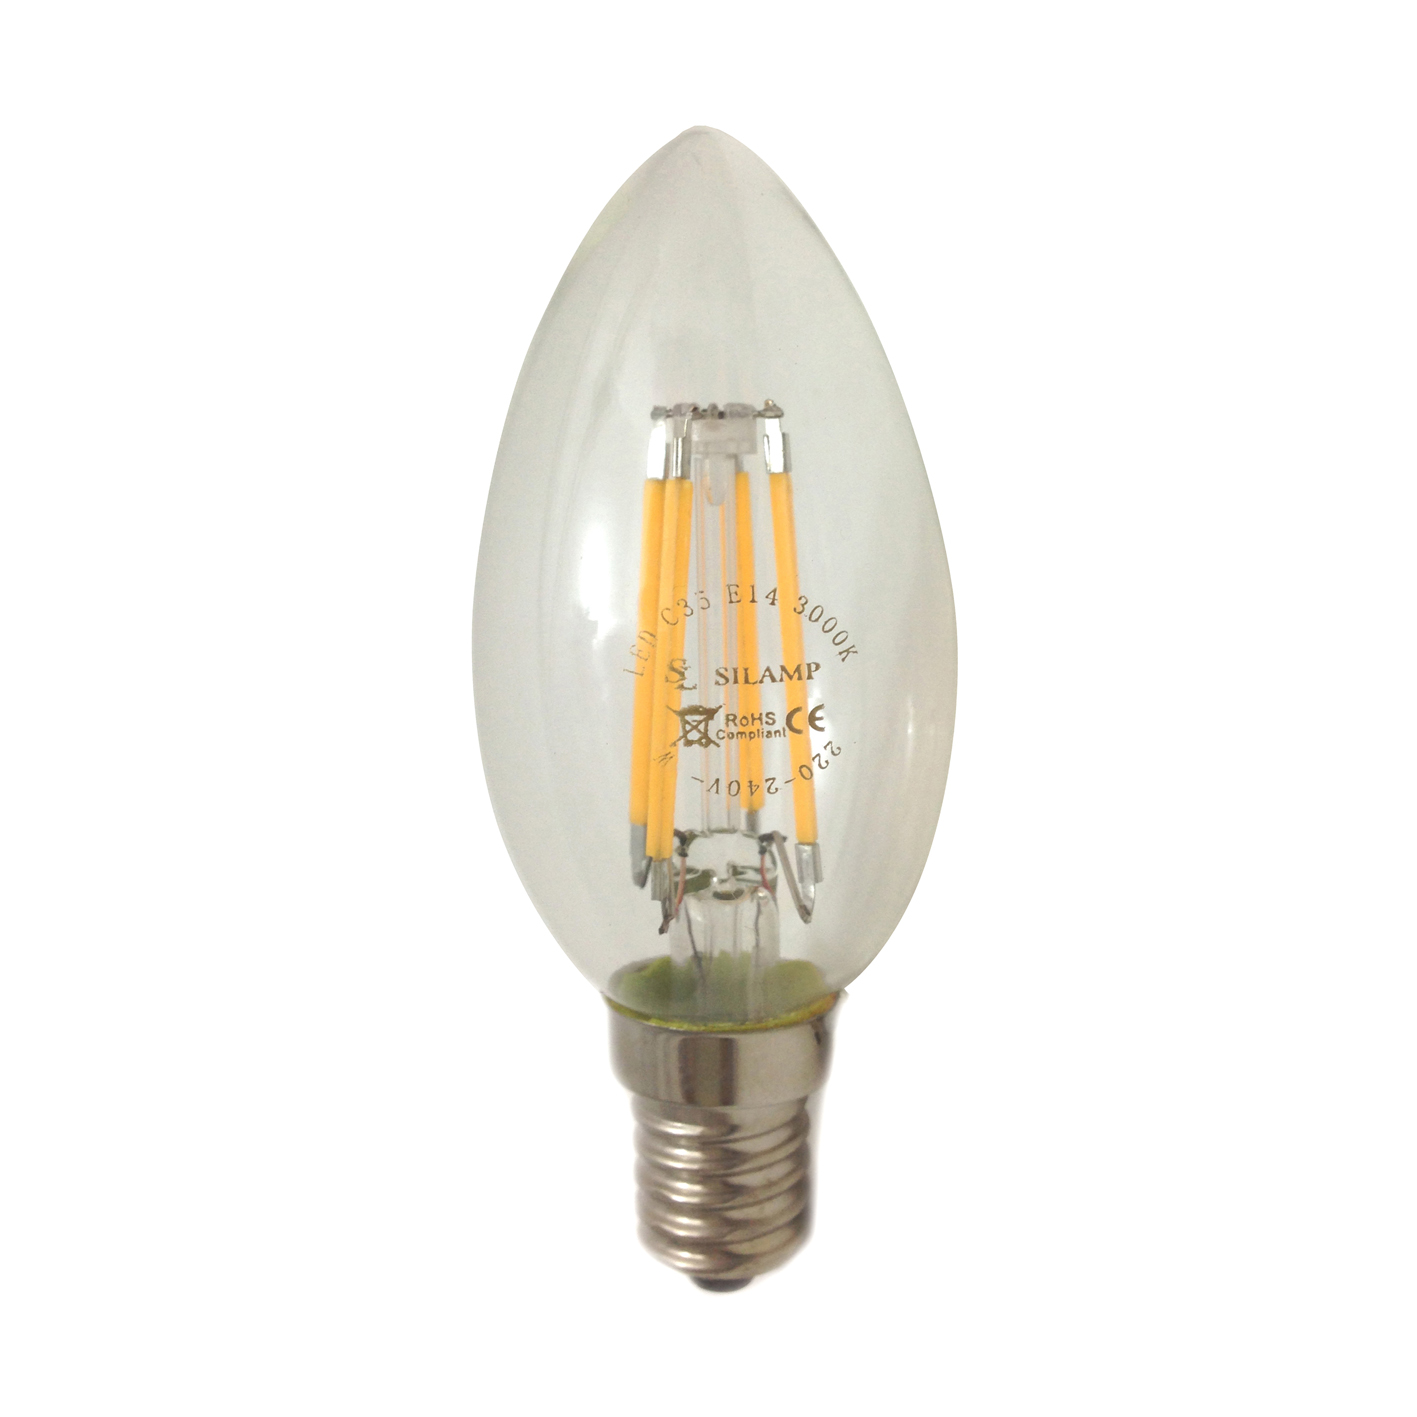 2x Lampadina LED E14 lampada Oliva bulbo 6W luce fredda 6000K illum